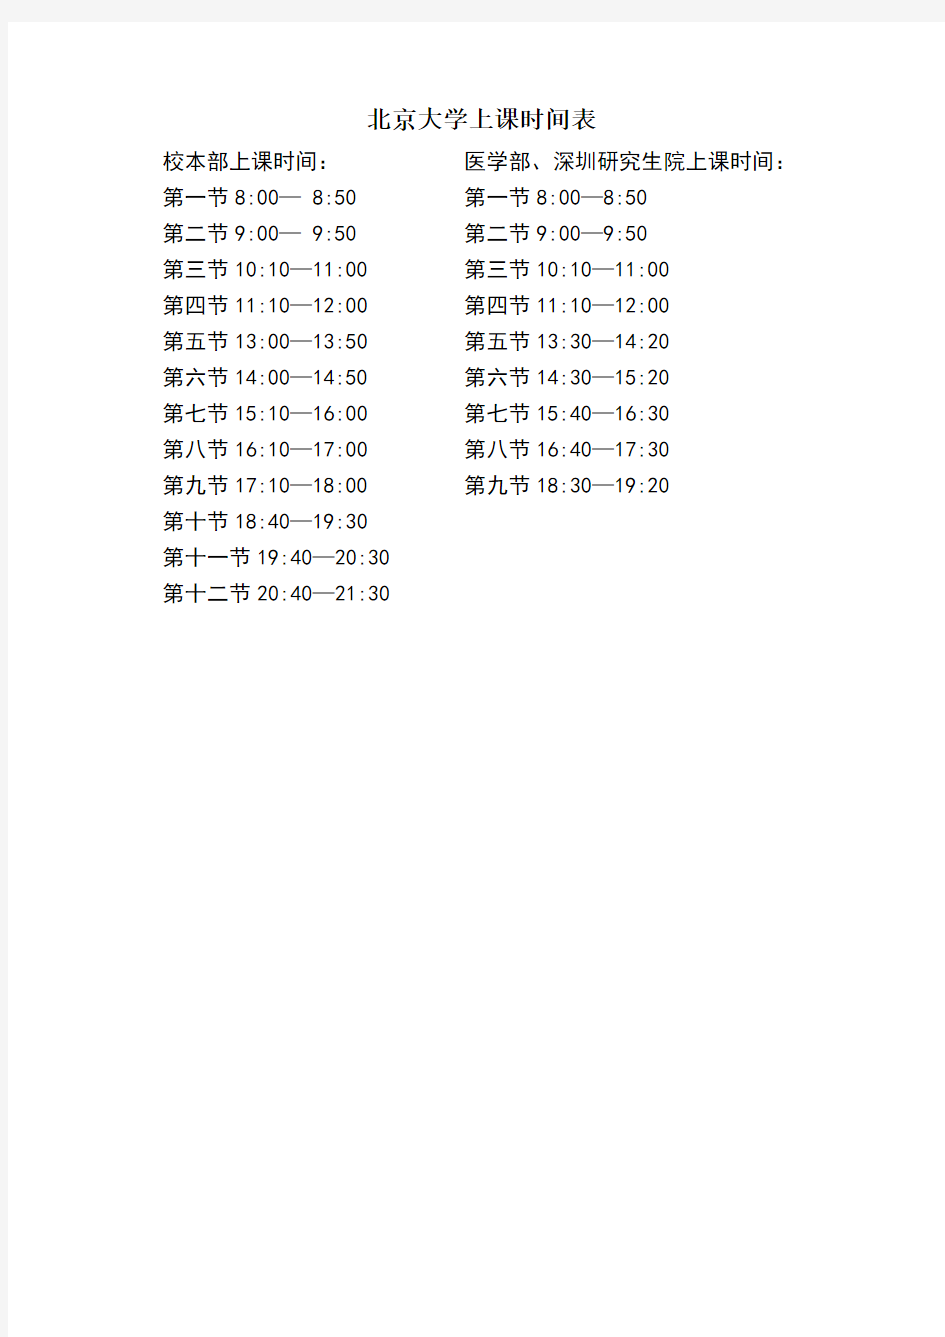 北京大学上课时间表